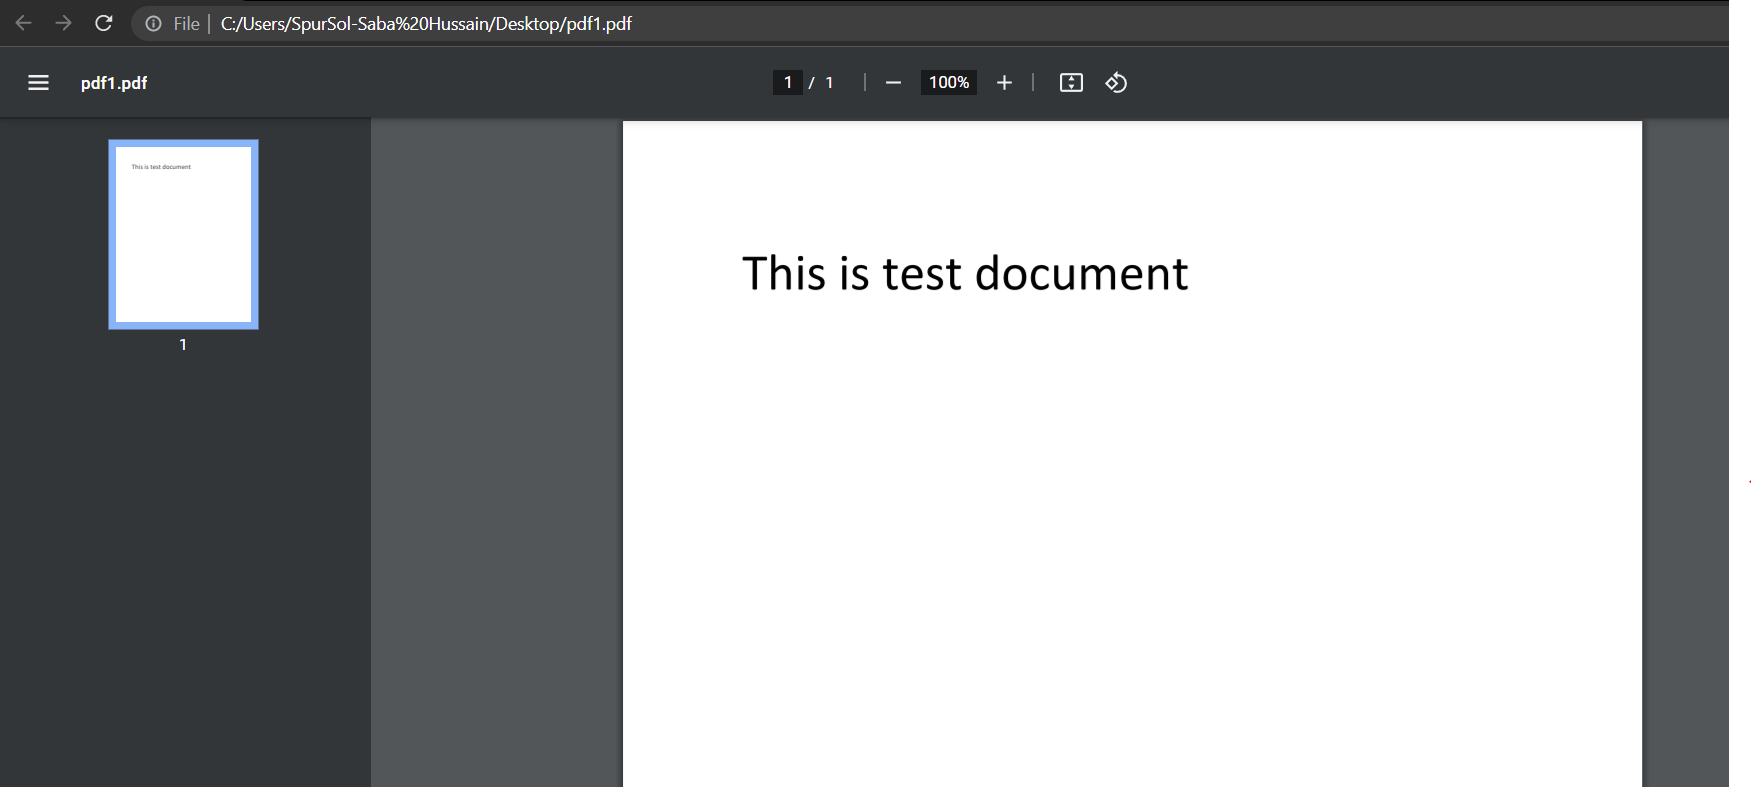 Compare two PDF files in C# windows application